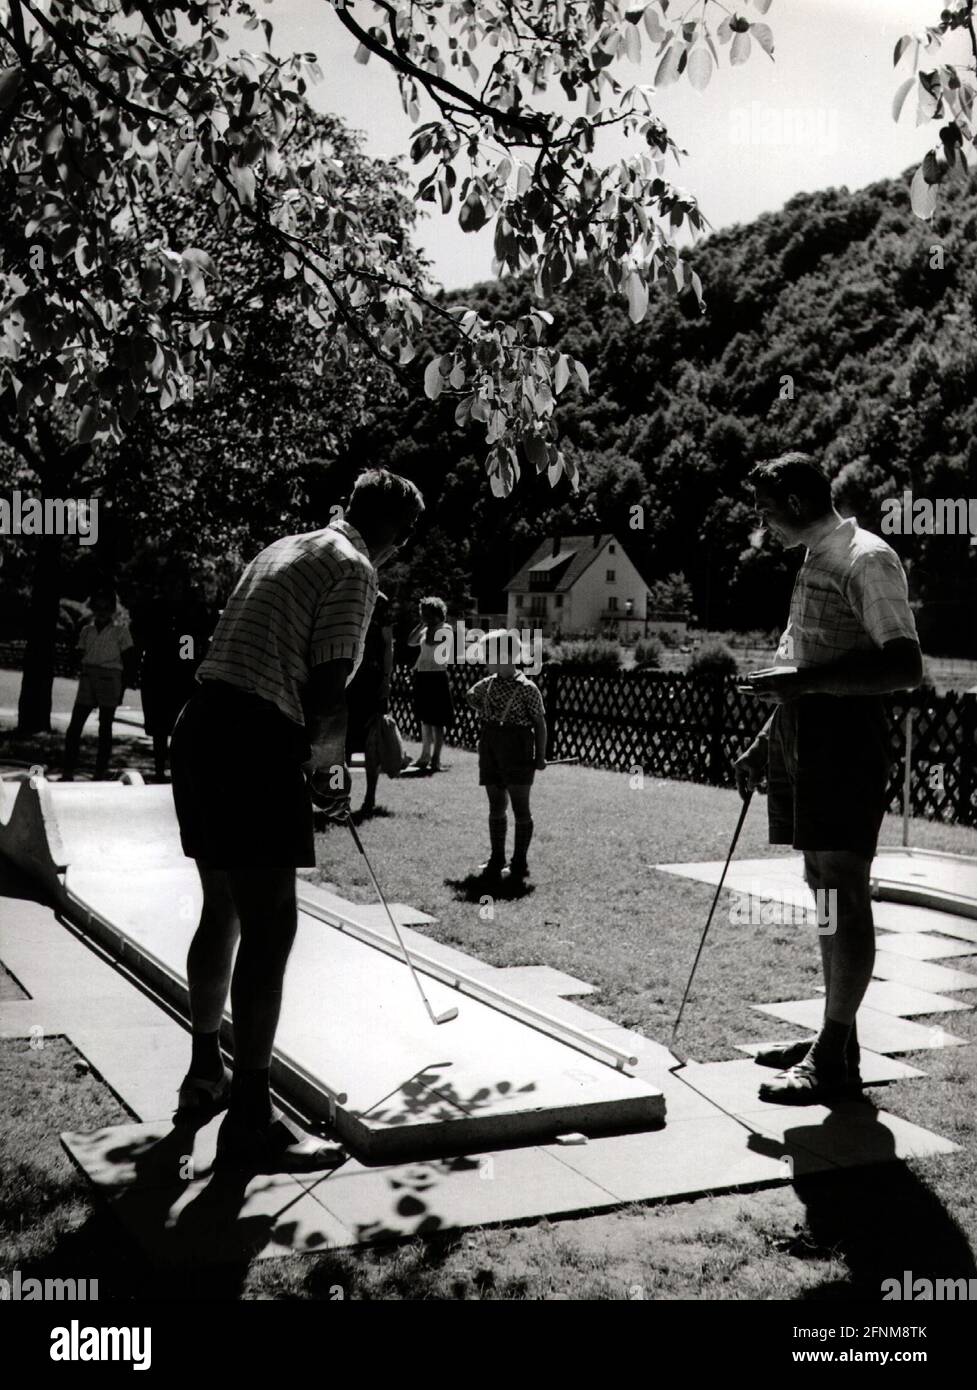 Juegos, mini golf, hombres jugando minigolf, alrededor de 1950s / 1960s, siglo 20th, histórico, histórico, ADICIONAL-DERECHOS-LIQUIDACIÓN-INFO-NO DISPONIBLE Foto de stock